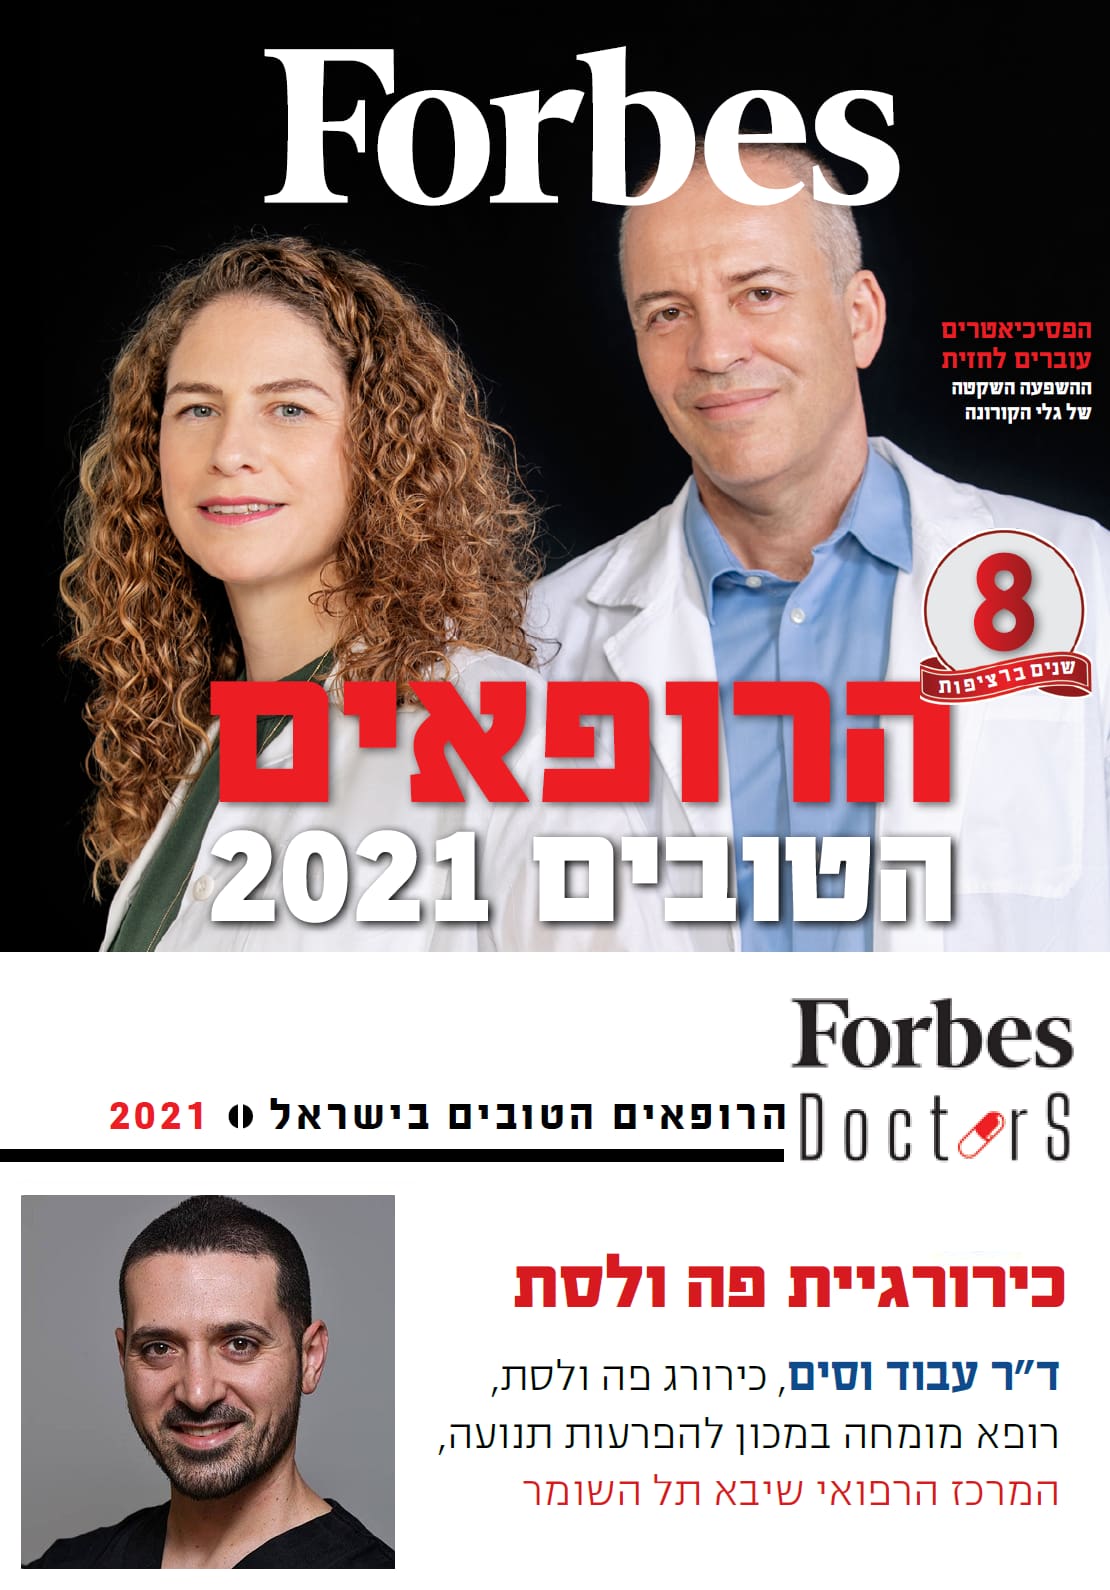 הרופאים הטובים פורבס 2021 Forbes